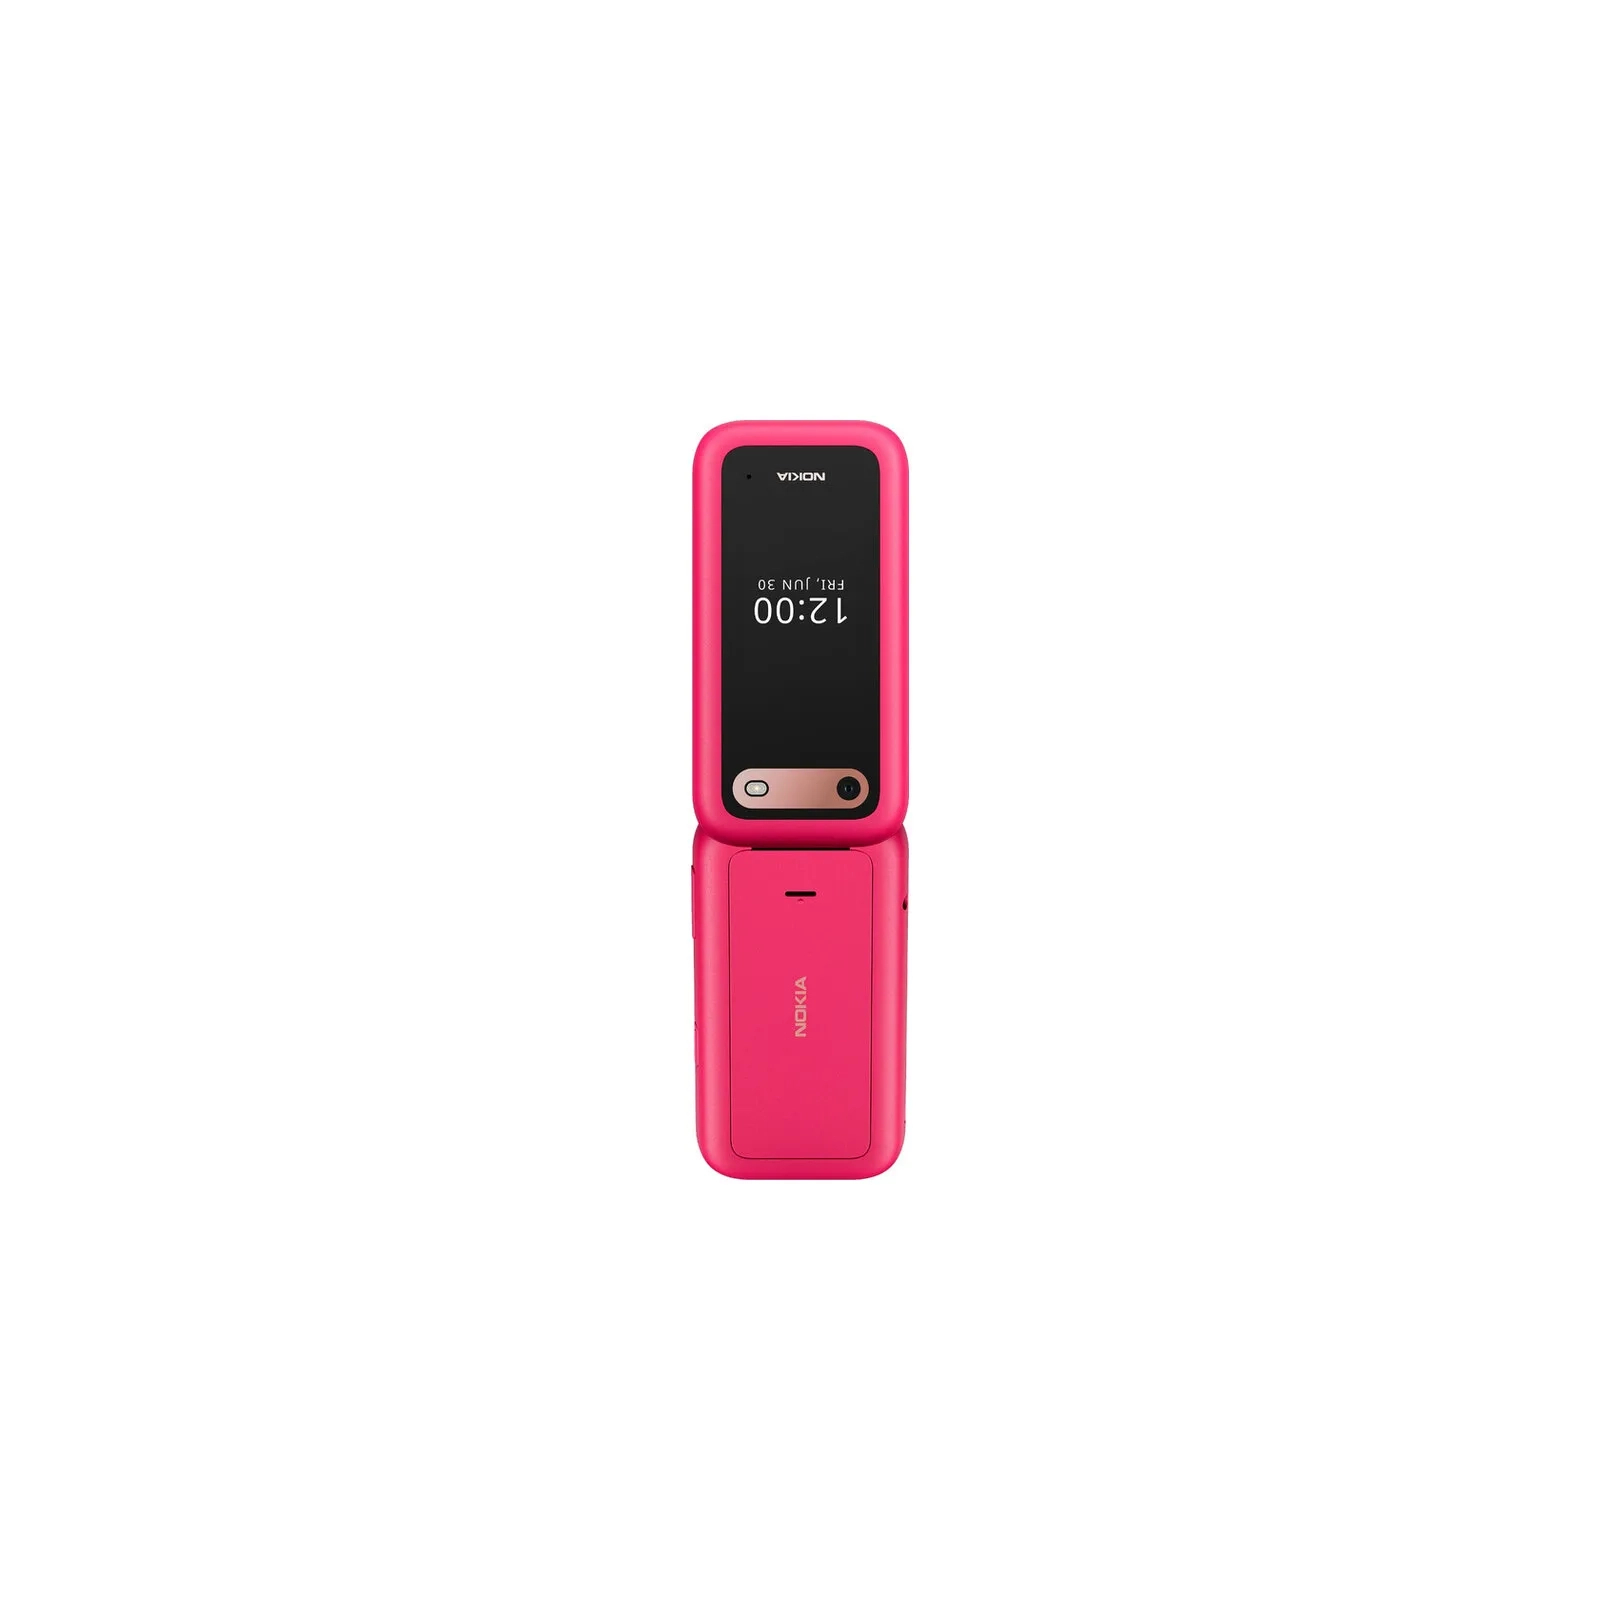 Мобильный телефон Nokia 2660 Flip Pink изображение 8